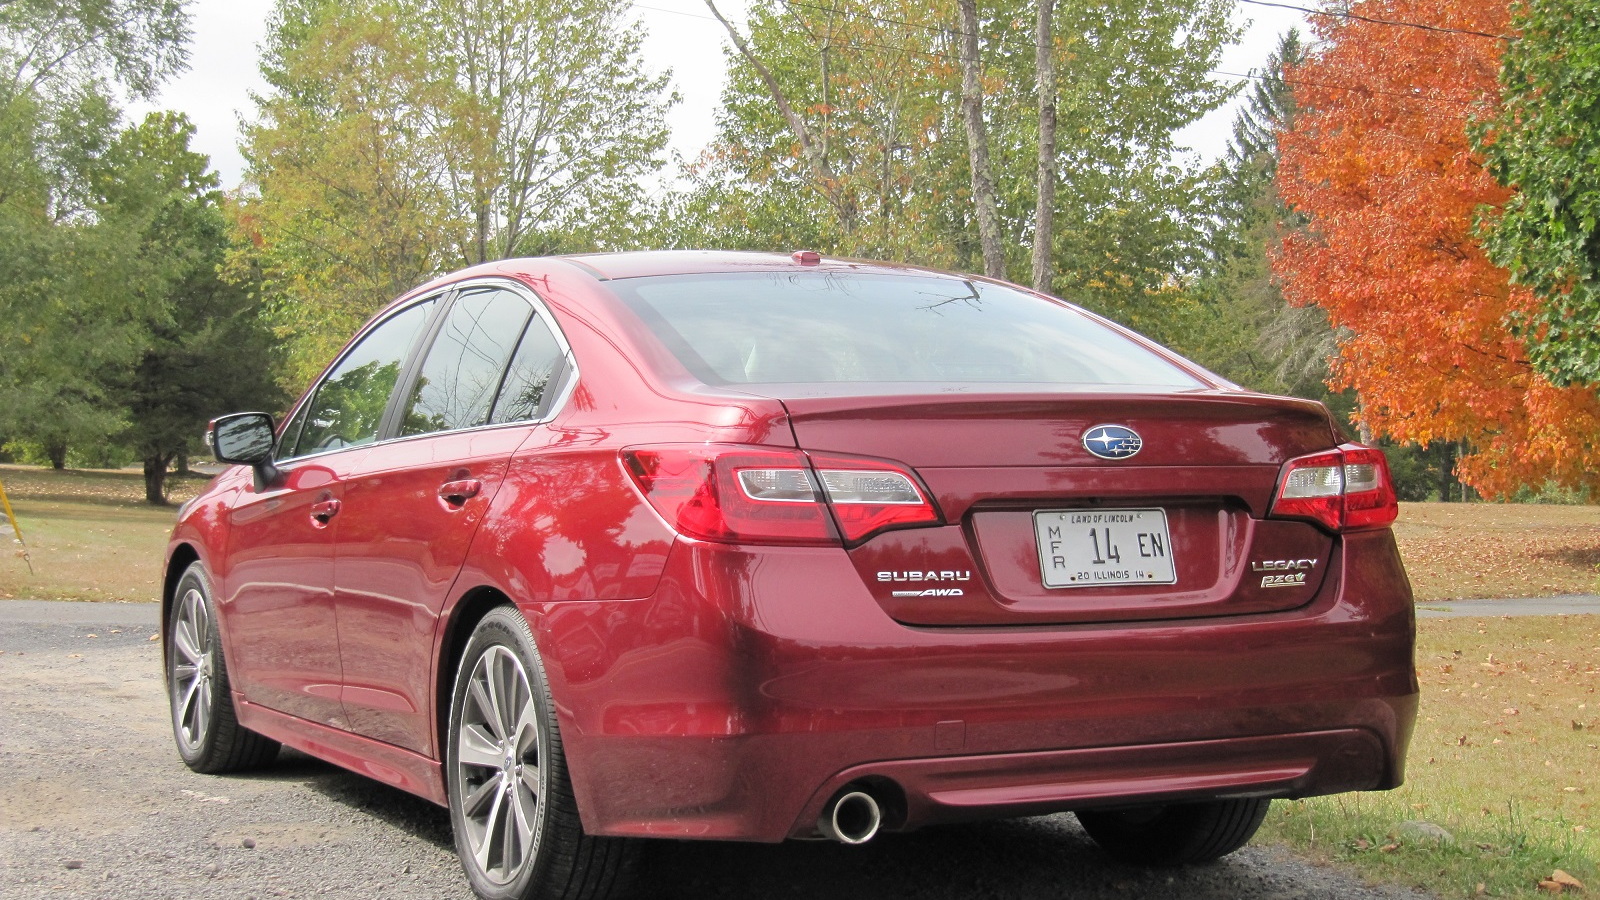 2015 Subaru Legacy 2.5i, Catskill Mountains, NY, Sep 2014